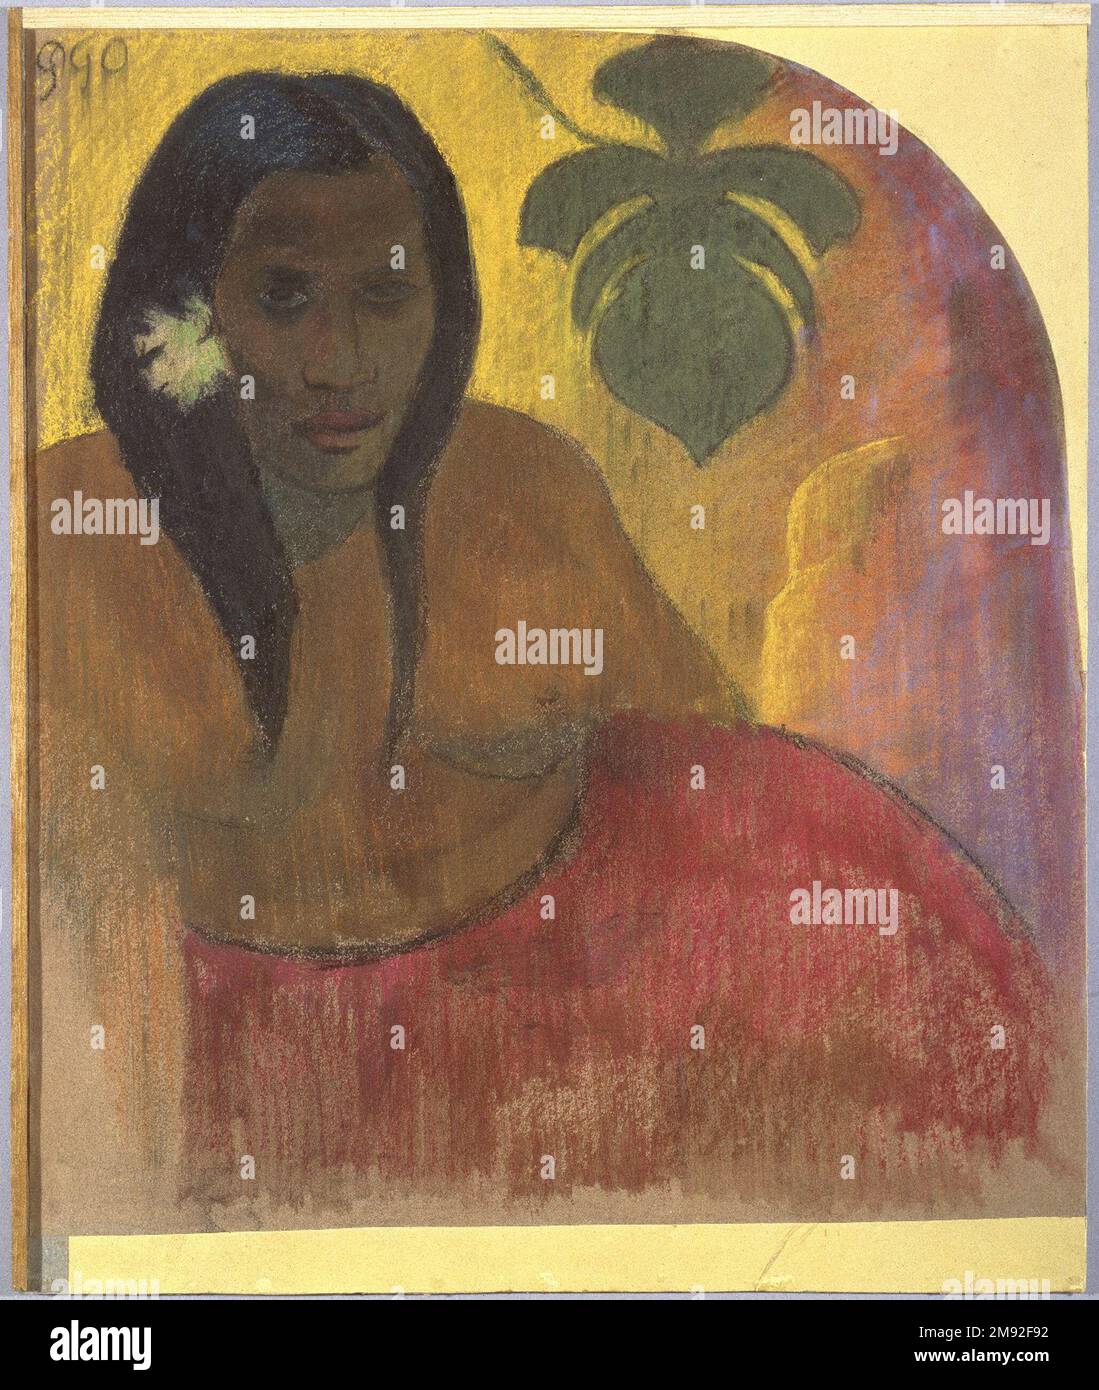 Donna Tahitiana Paul Gauguin (francese, 1848-1903). Donna Tahitiana, ca. 1894. Carbone e pastello su carta, incollati su carta a colino giallo e montati su cartoncino grigio, 21 5/8 x 19 1/2in. (54,9 x 49,5cm). Nel 1890 Paul Gauguin scrisse della sua attrazione alla colonia francese di Tahiti in un modo che esemplifica il “primitivismo”, il fascino degli artisti europei con l’arte e le culture non occidentali, le cui complessità non consideravano e che vedevano meno sviluppate e più puri delle loro: “Fuggirò nei boschi di un’isola dell’Oceania, lì per vivere in estasi, calma e arte Con una nuova famiglia dal mio si Foto Stock